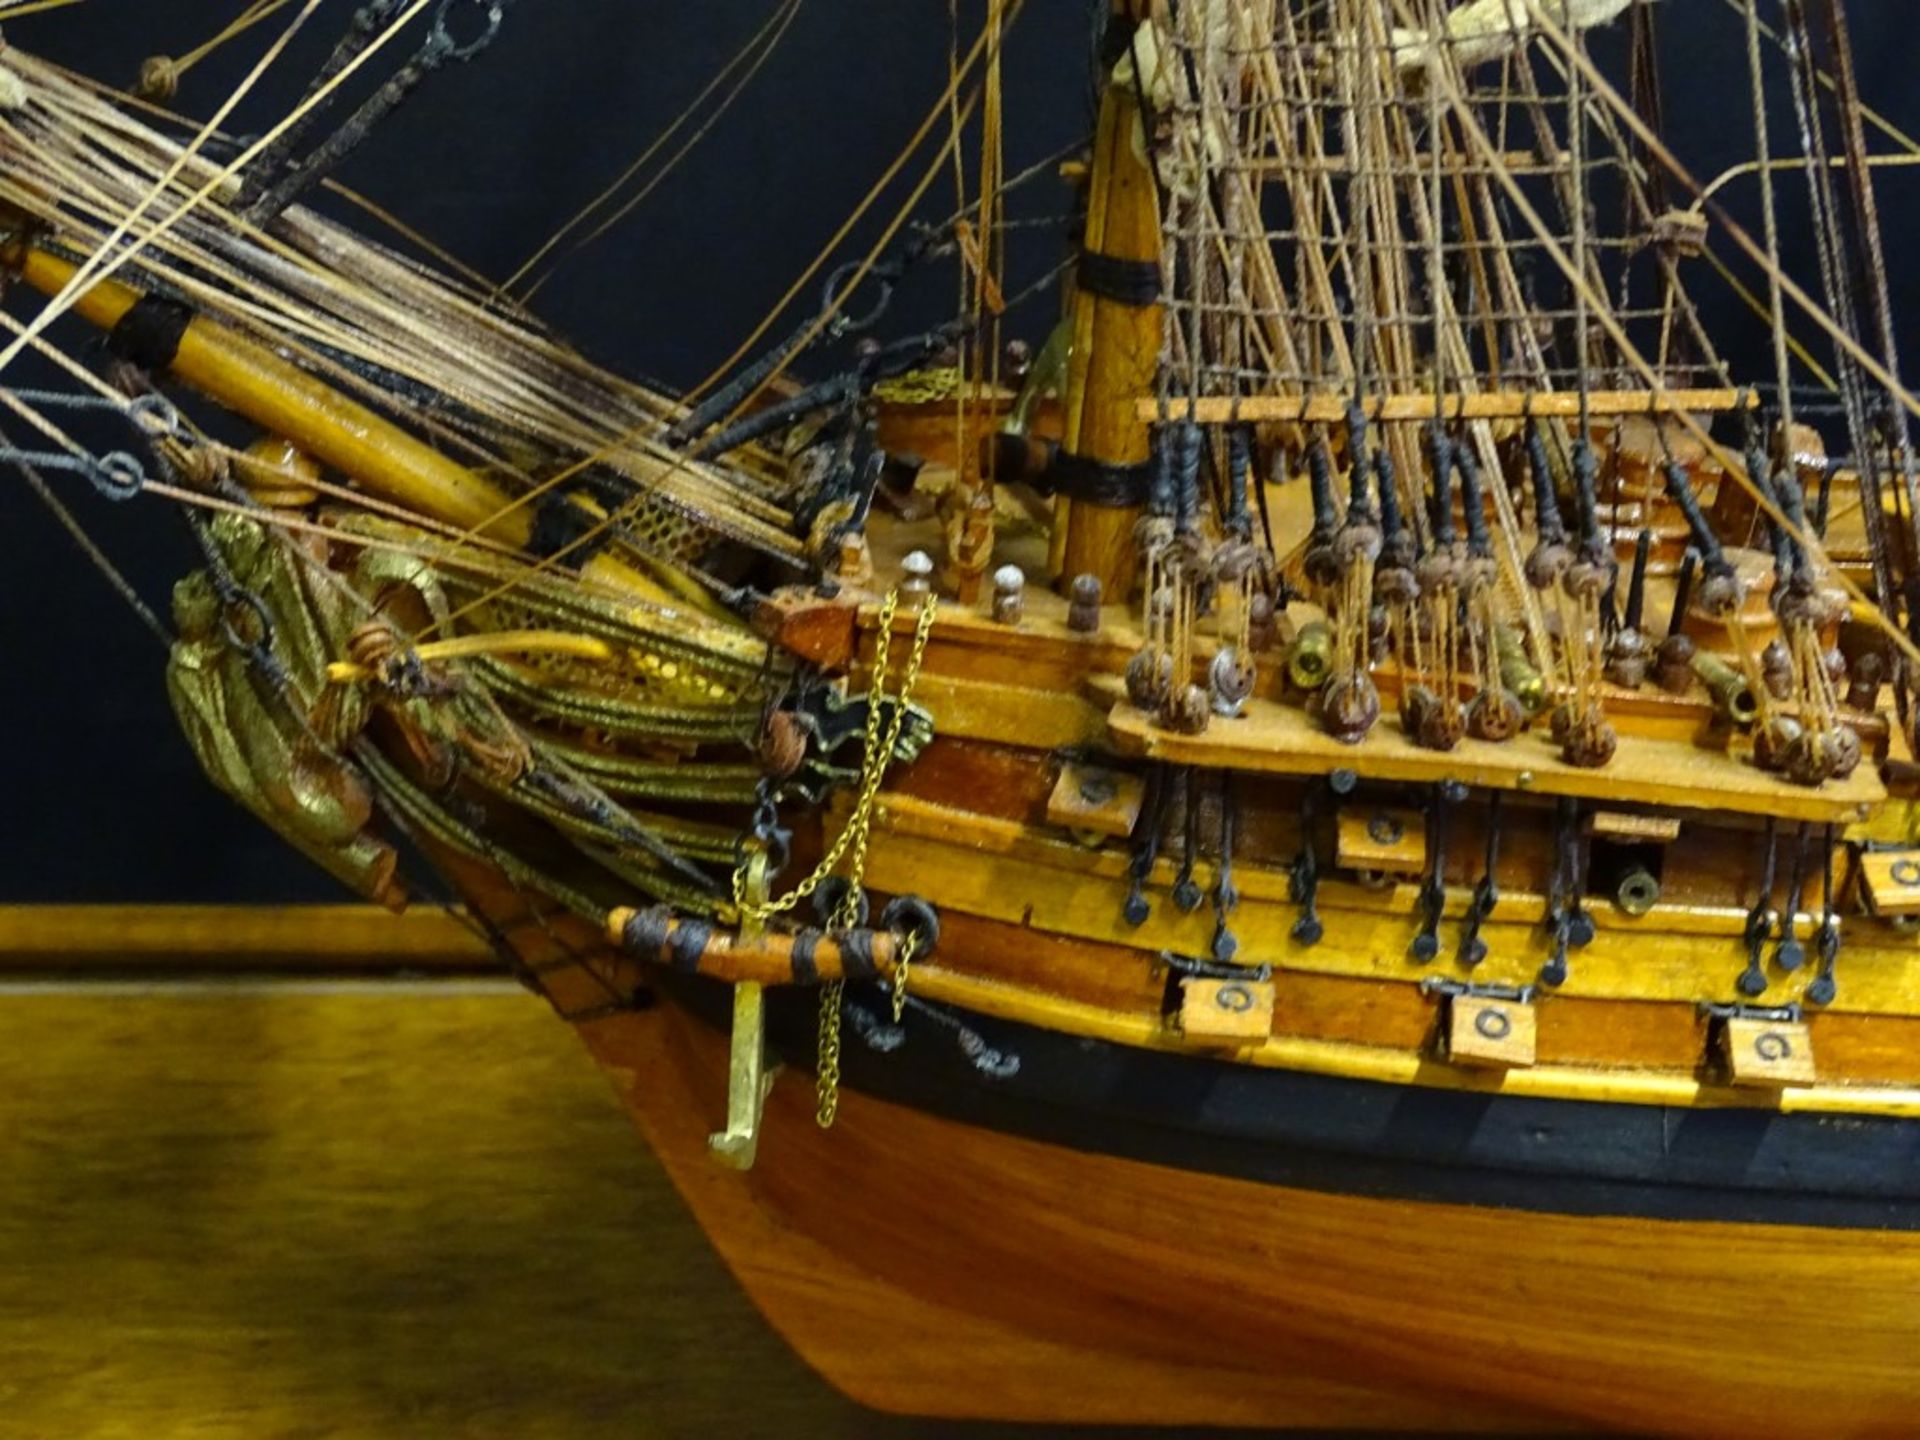 grosses Segelschiffmodell "Le superbe" in Glaskasten, feine Handarbeit, Kasten H-70,5 cm, 95x35,5 - Bild 6 aus 10